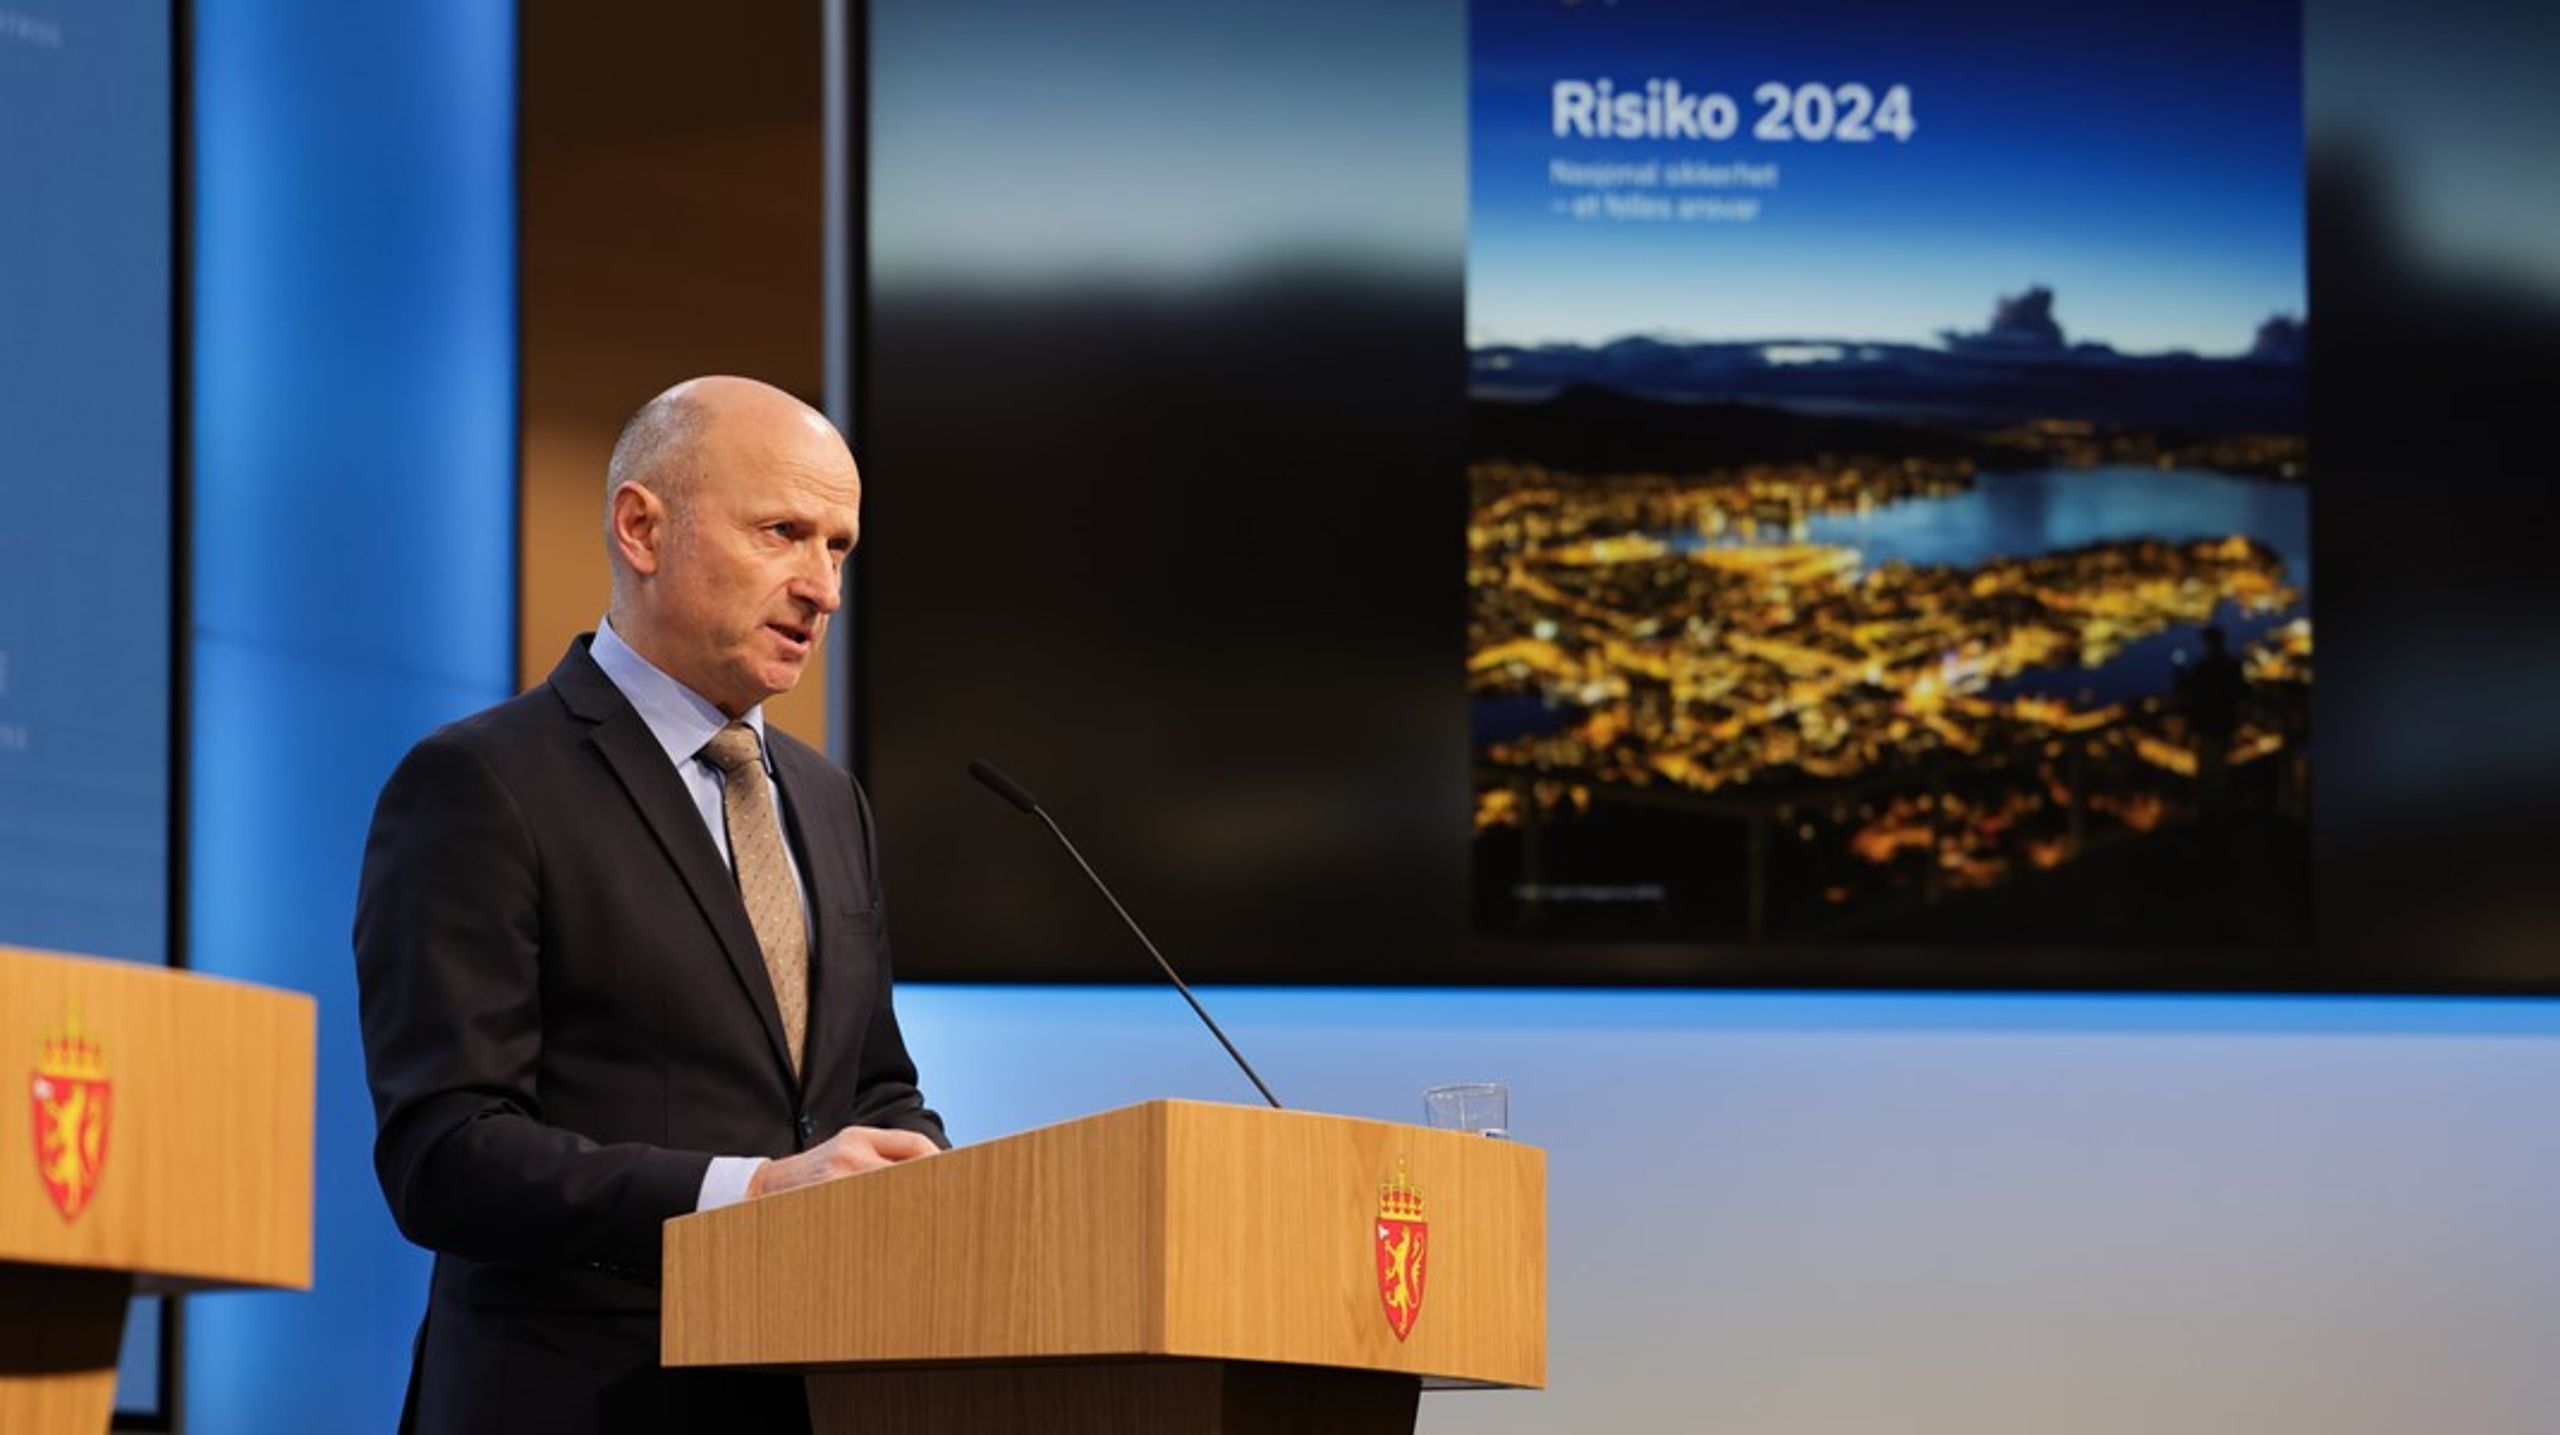 Nasjonal sikkerhetsmyndighet (NSM), her ved midlertidig direktør Lars Christian Aamodt, avholder Sikkerhetskonferansen 2024.